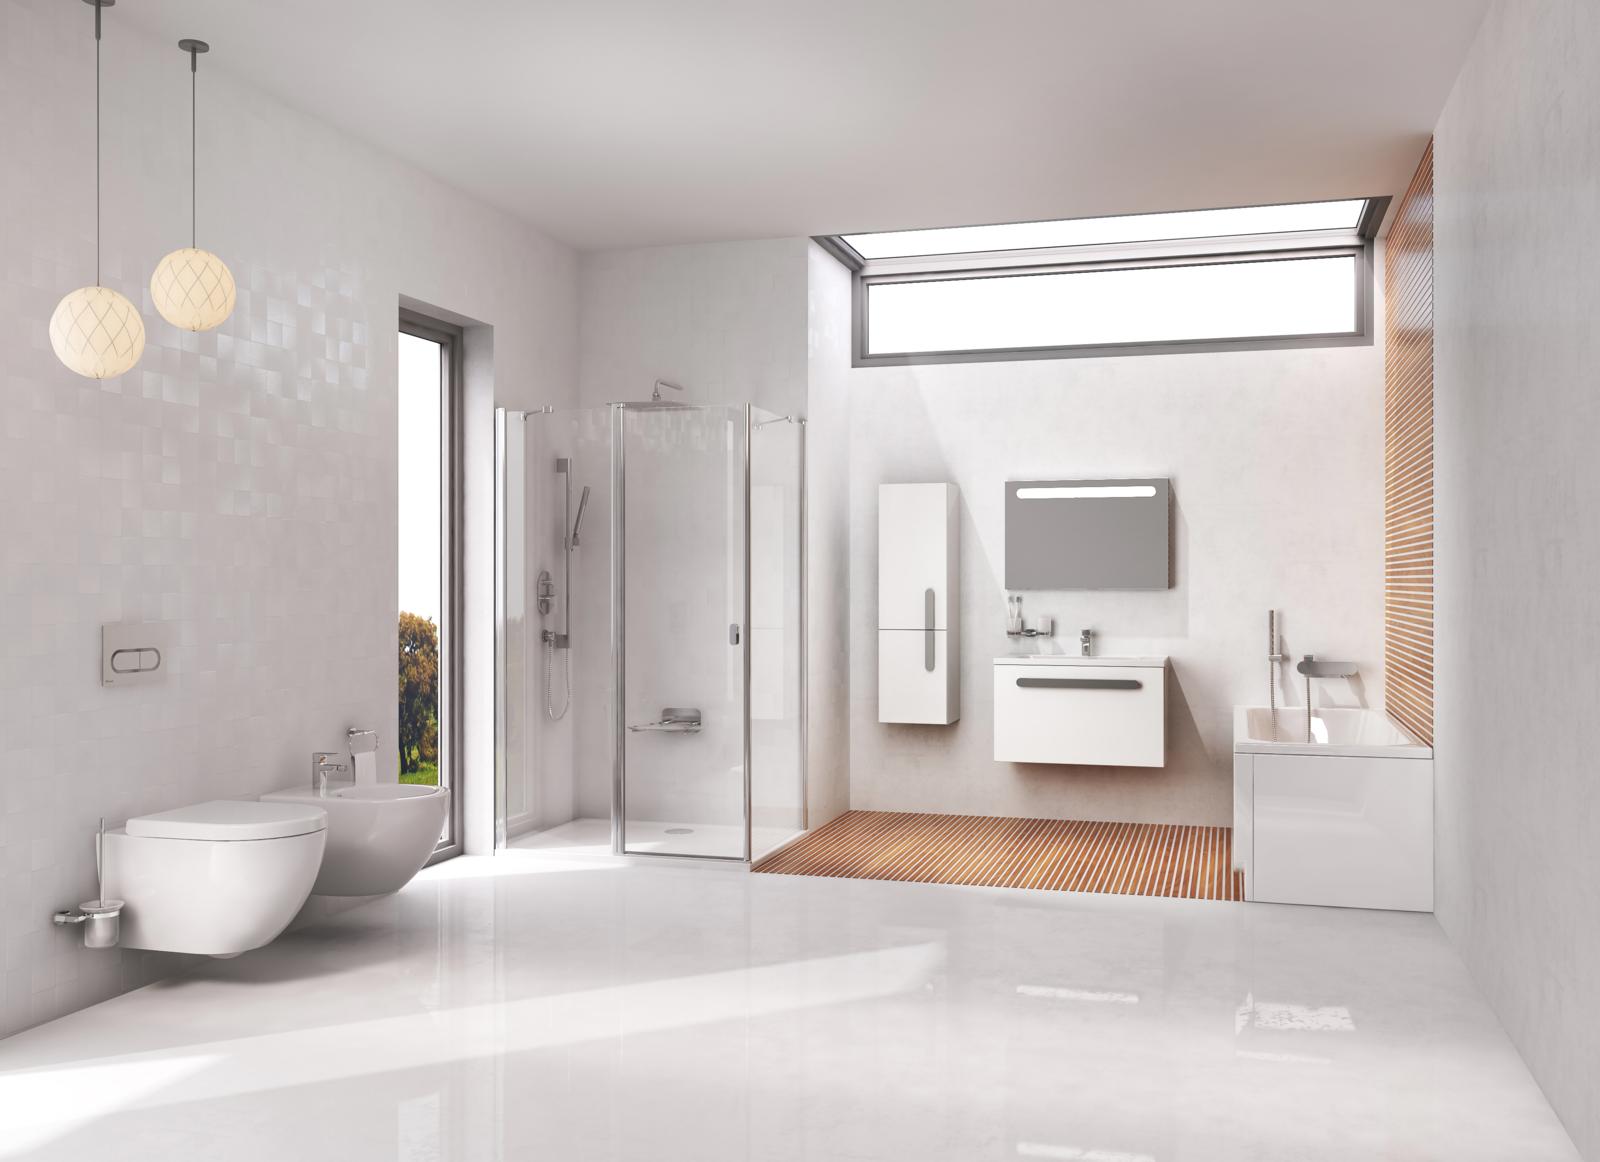 A Chrome fürdőszoba kollekció a a nagyobb méretű szanitereken (kád, kádparaván, zuhanykabin, stb.), valamint  WC-n és bidén kívül szekrénykével ellátott kézmosót, csaptelepet és kiegészítők széles választékát tartalmazza.